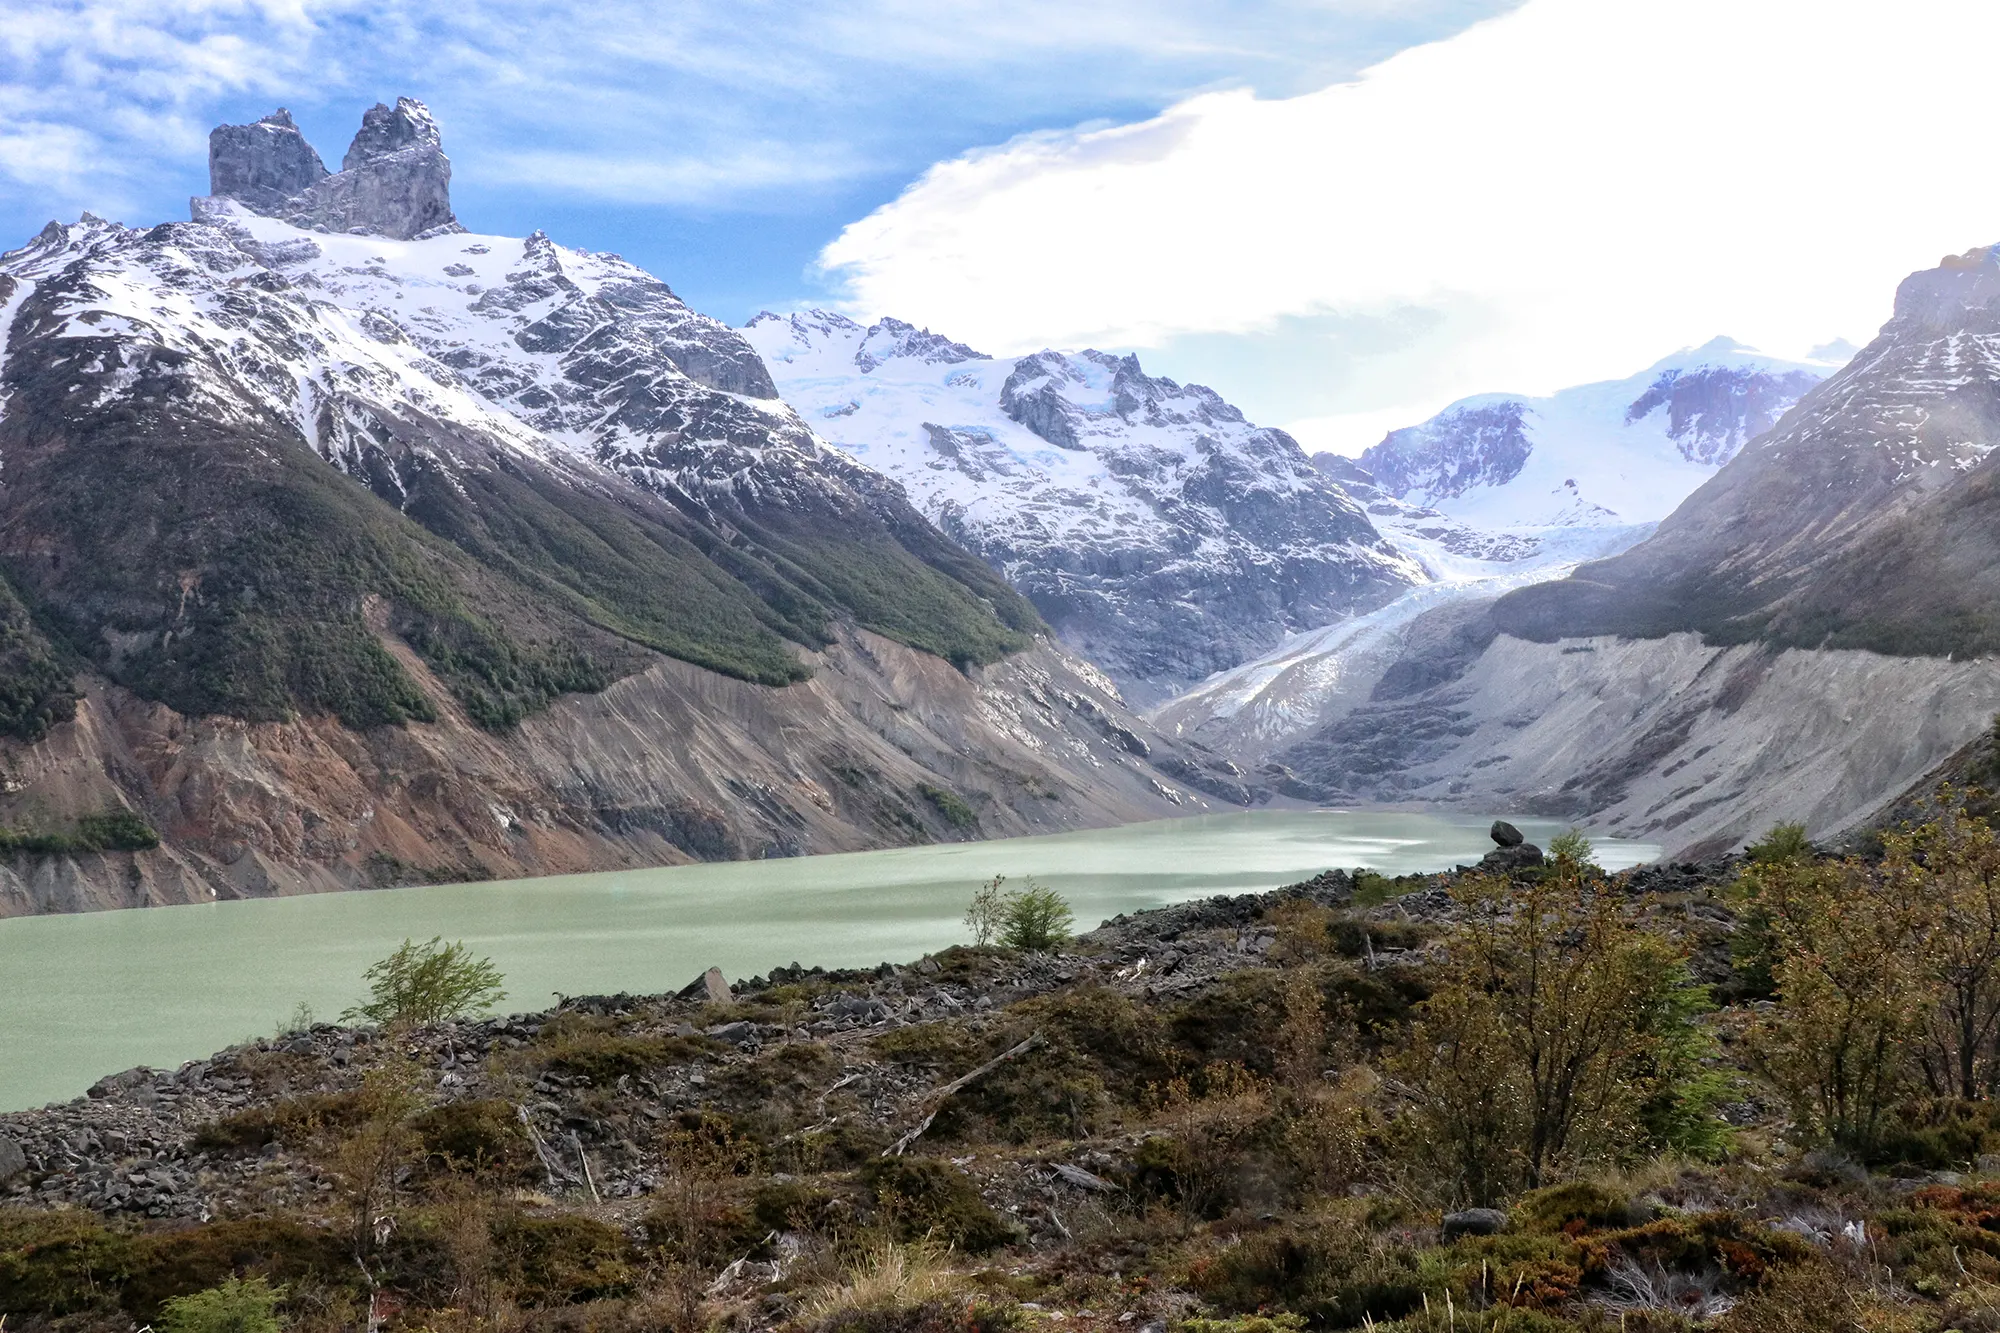 Glaciar Calluqueo, Chili